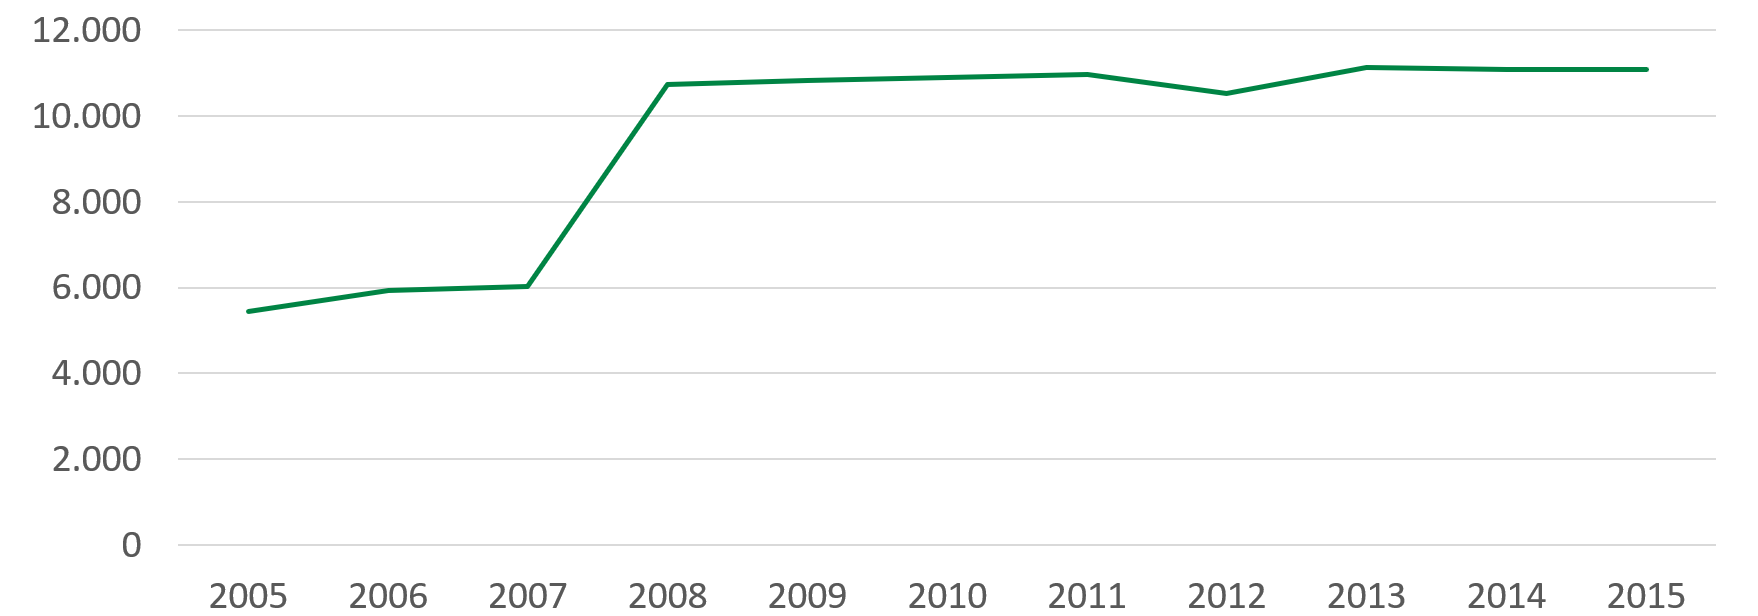 2005 wurden 5.400 Inanspruchnahmen gezählt, 2008 10.700 und 2015 11.000.